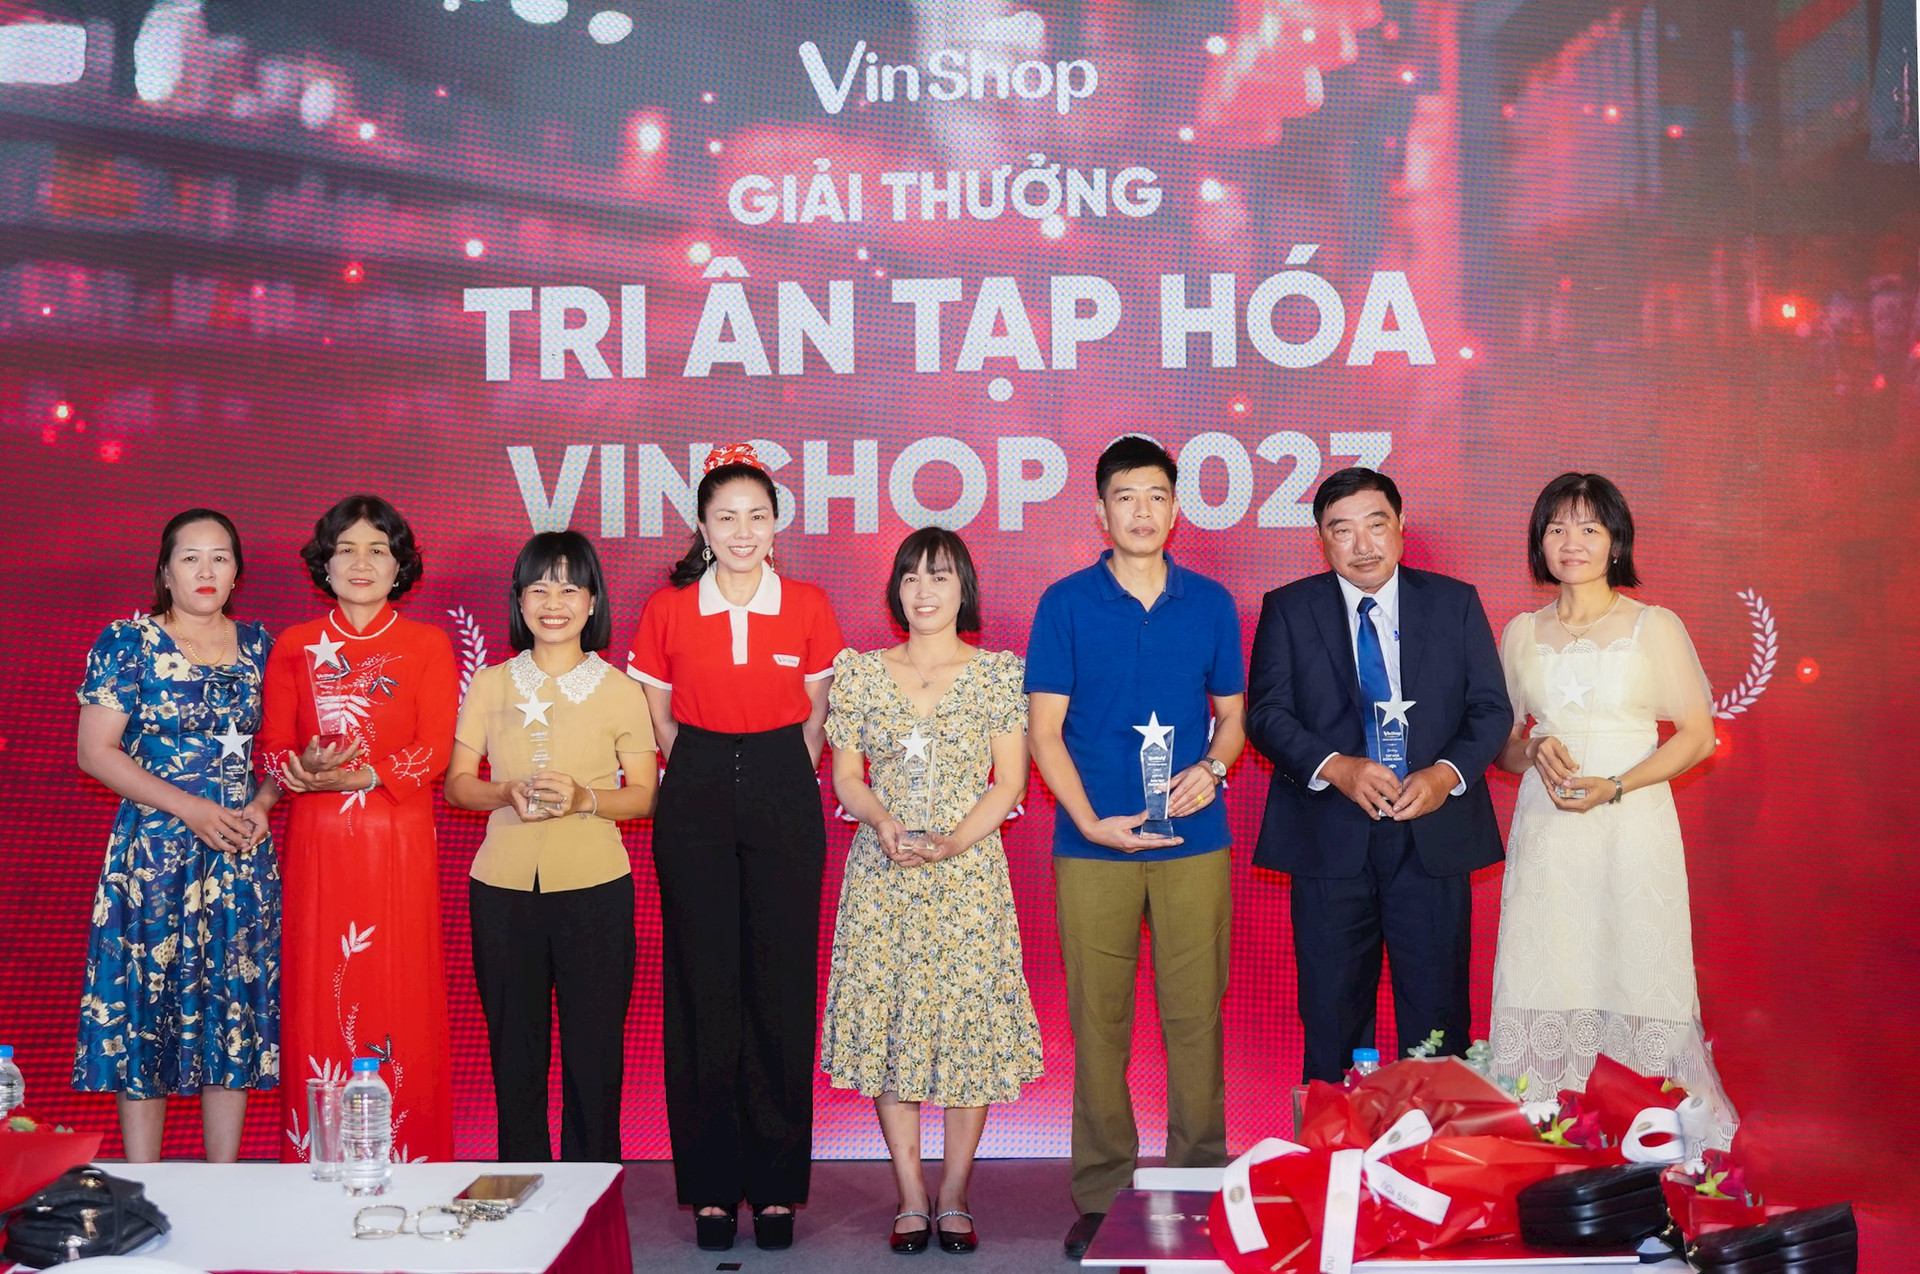 VinShop vinh danh các tiểu thương sau 3 năm ‘số hóa’ ngành bán lẻ truyền thống - Ảnh 1.